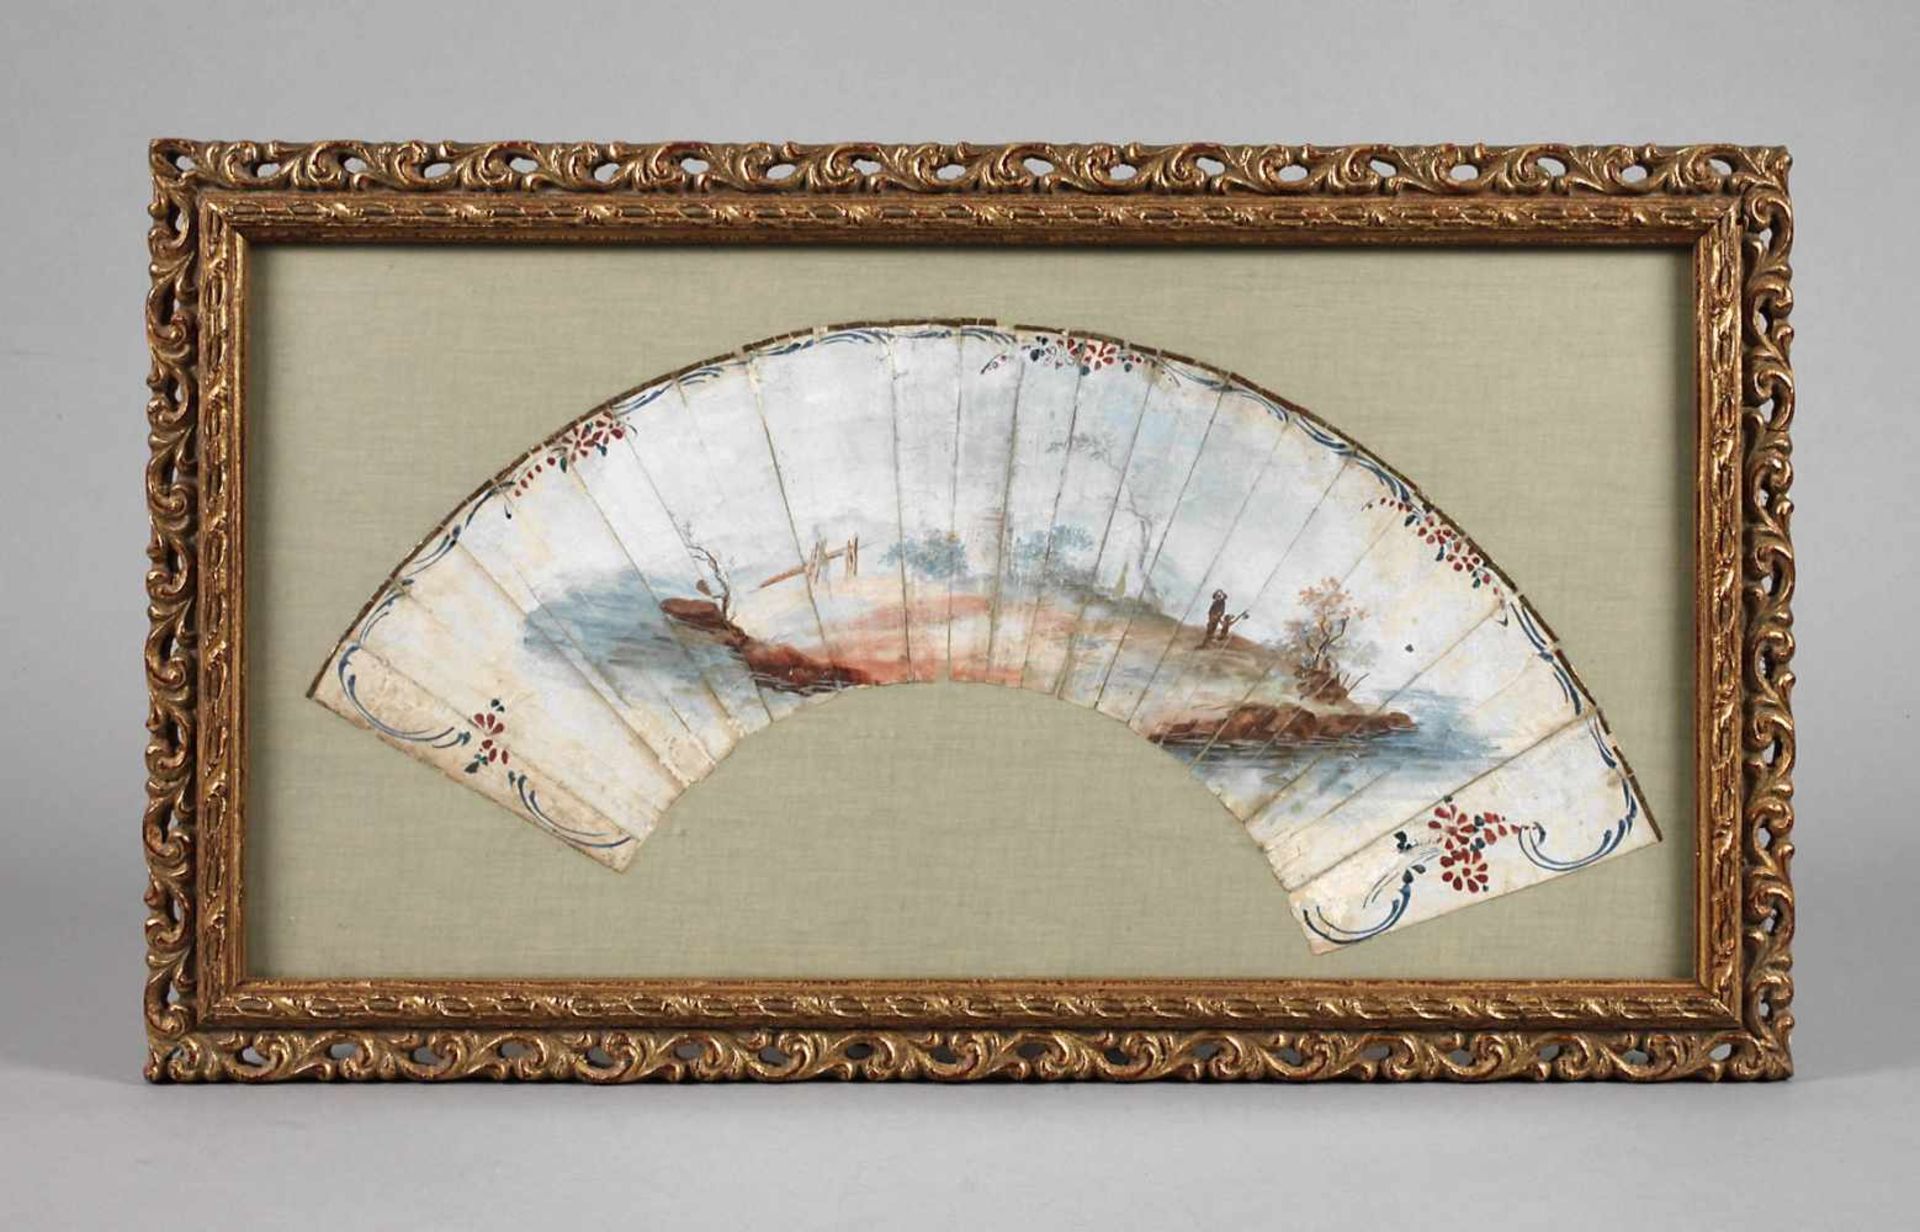 Gerahmter Fächer Rokokoum 1780, Gouache auf Papier, ungemarkt, Landschaftsmotiv, gerahmt von